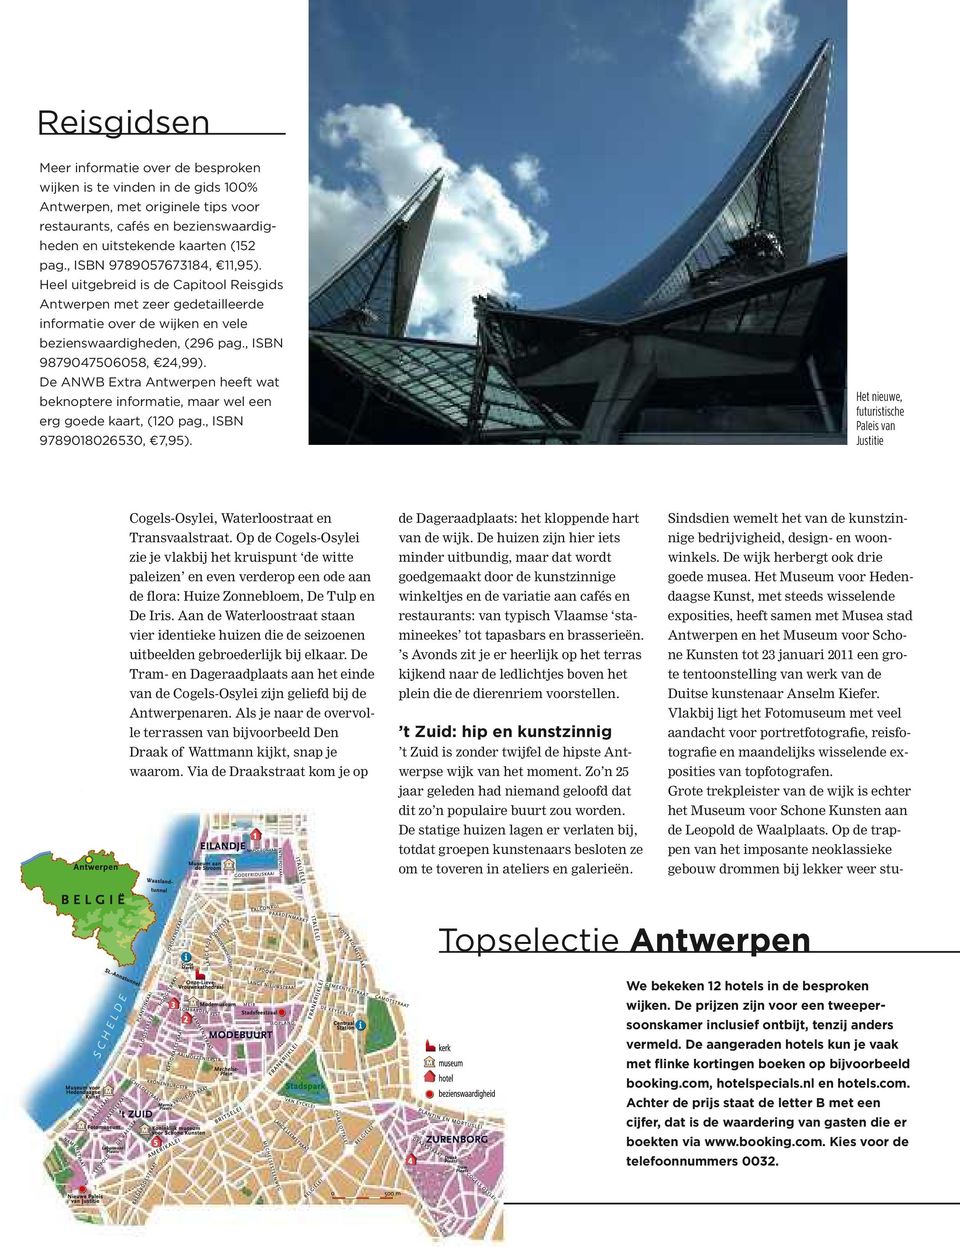 De ANWB Extra Antwerpen heeft wat beknoptere informatie, maar wel een erg goede kaart, (120 pag., ISBN 9789018026530, 7,95).